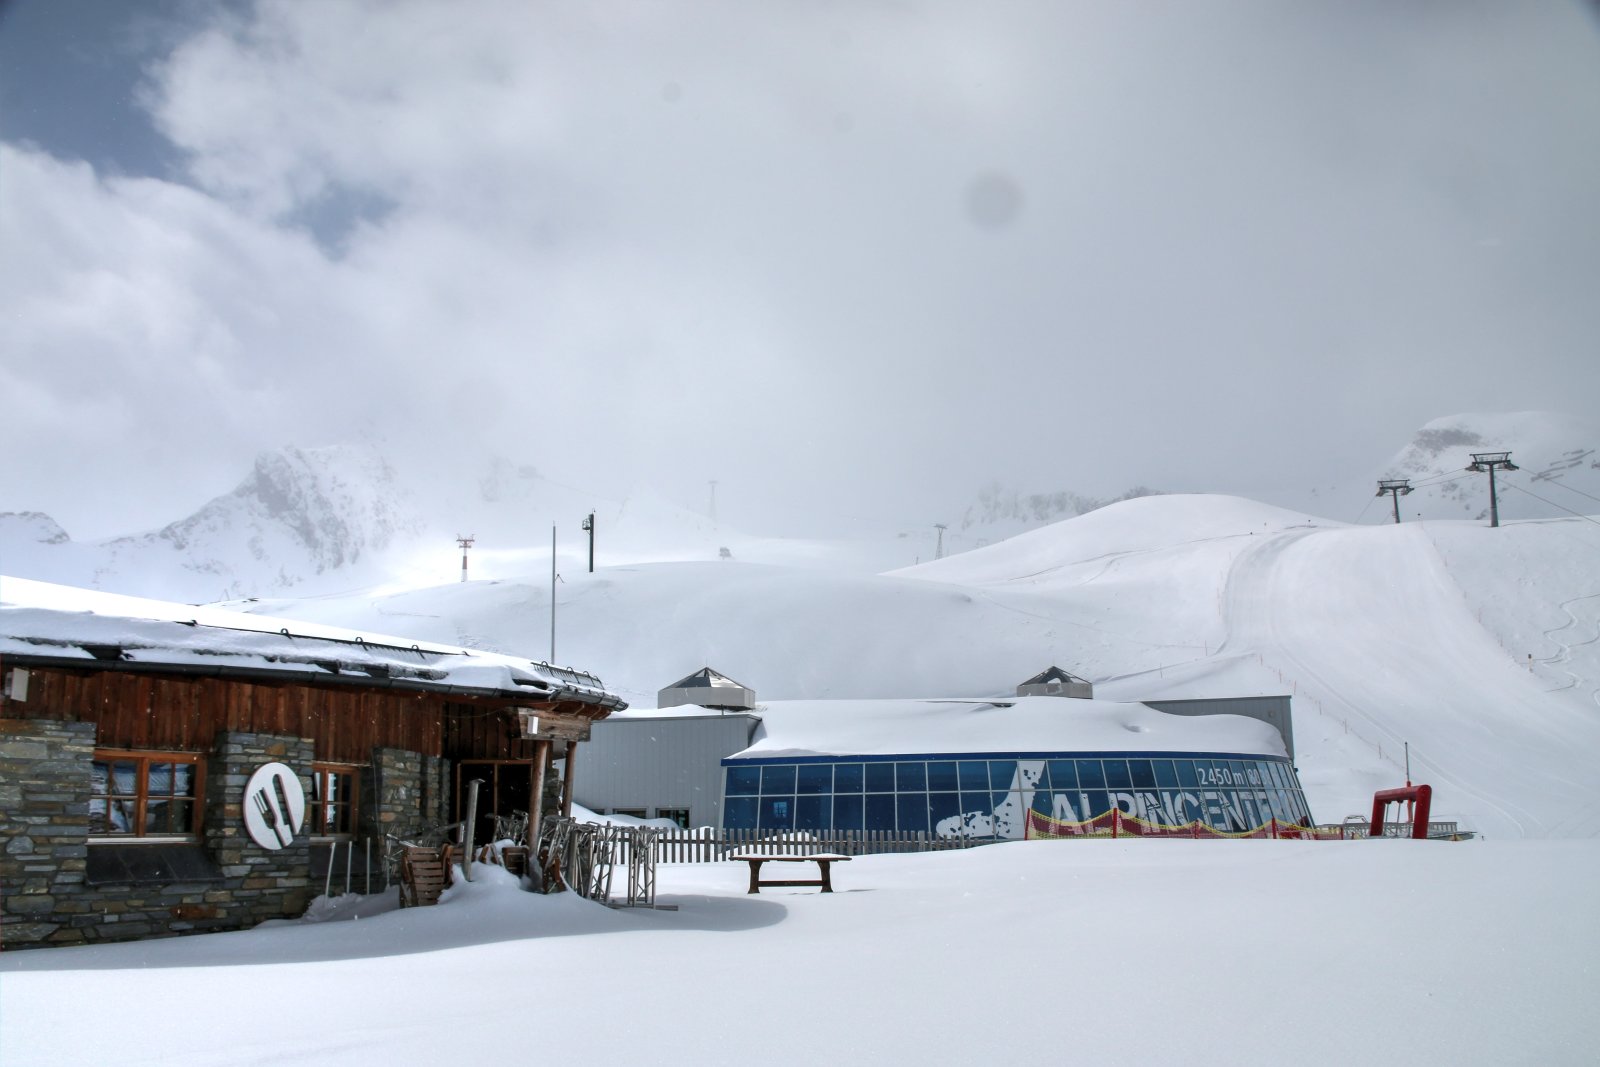 Az Alpincenter és a Gletschermühle étterem 2450 méteren